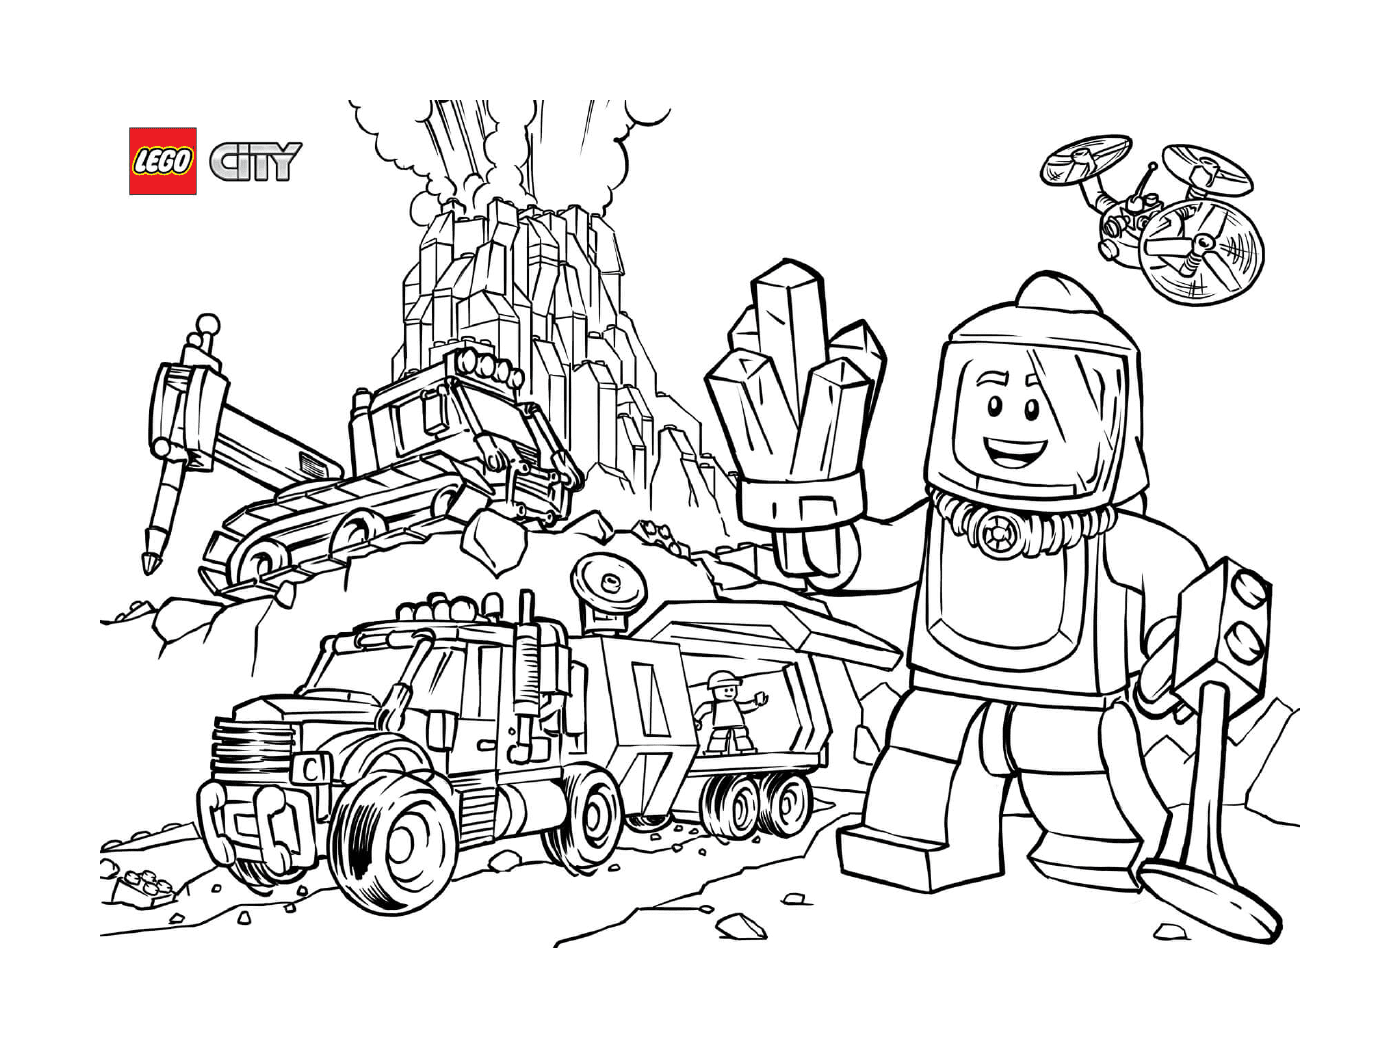  Exploradores del Volcán de la Ciudad de Lego 